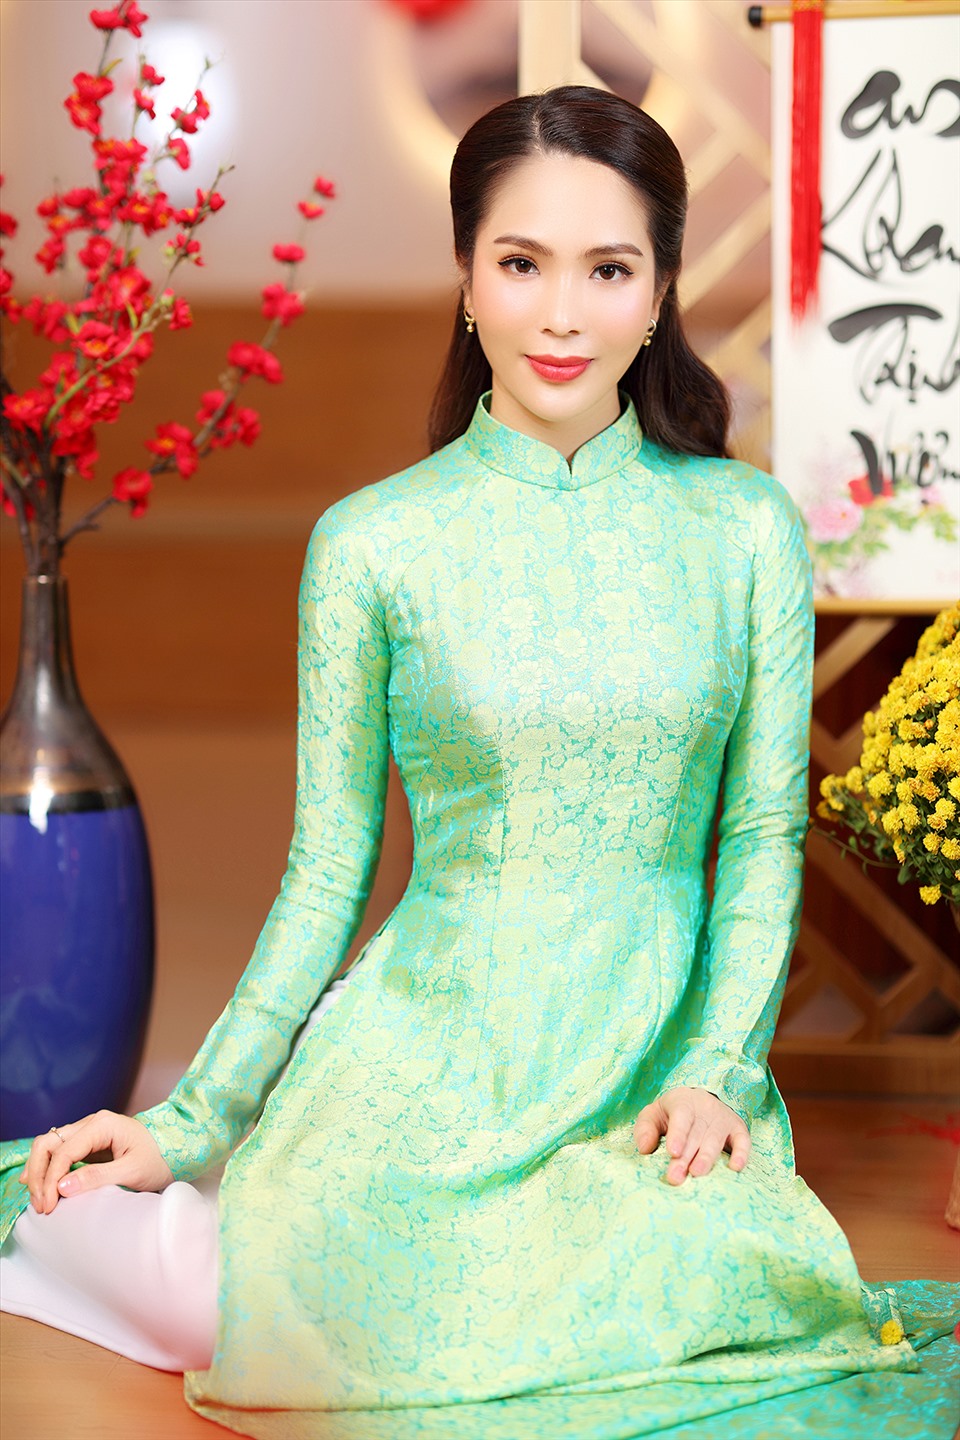 Từng đạt danh hiệu Hoa hậu Áo dài nên với Dương Kim Ánh, áo dài luôn là lựa chọn hàng đầu của cô trong những dịp quan trọng, đặc biệt vào những ngày Tết cổ truyền nhằm giữ gìn văn hoá truyền thống, thể hiện tinh thần dân tộc. Ảnh: NVCC.